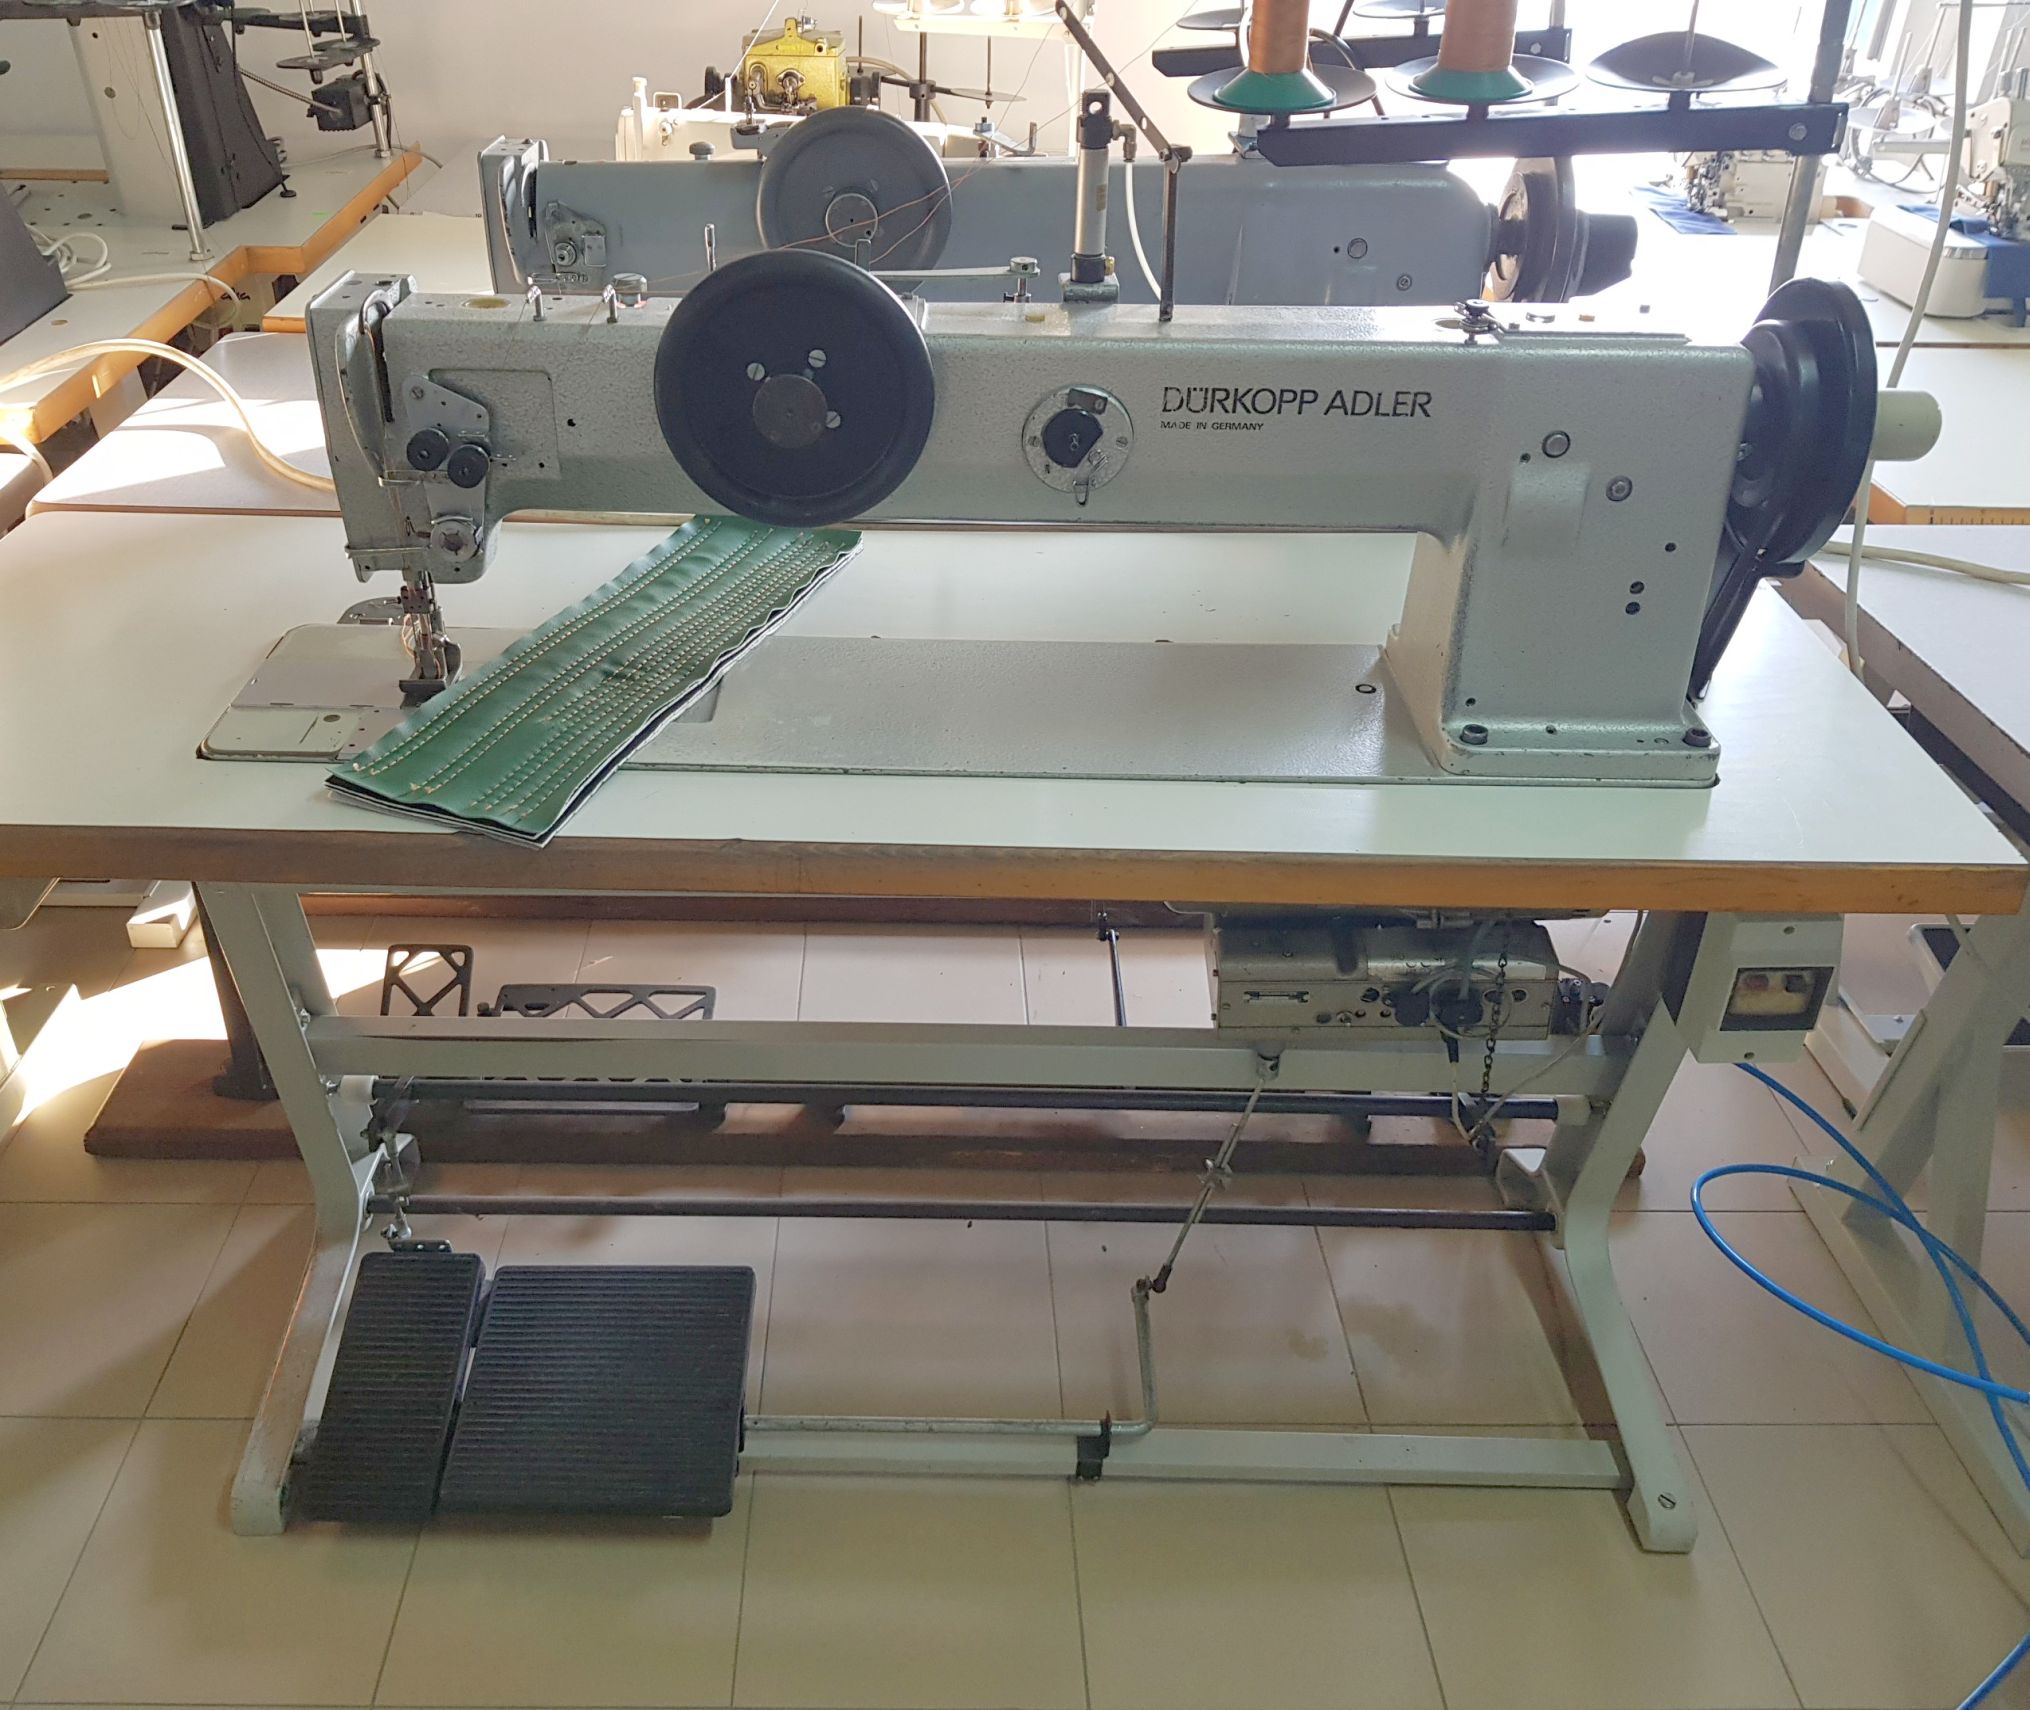 DURKOPP K221 990007 2 Needle Lockstitch Sewing Machine Compound Feeding